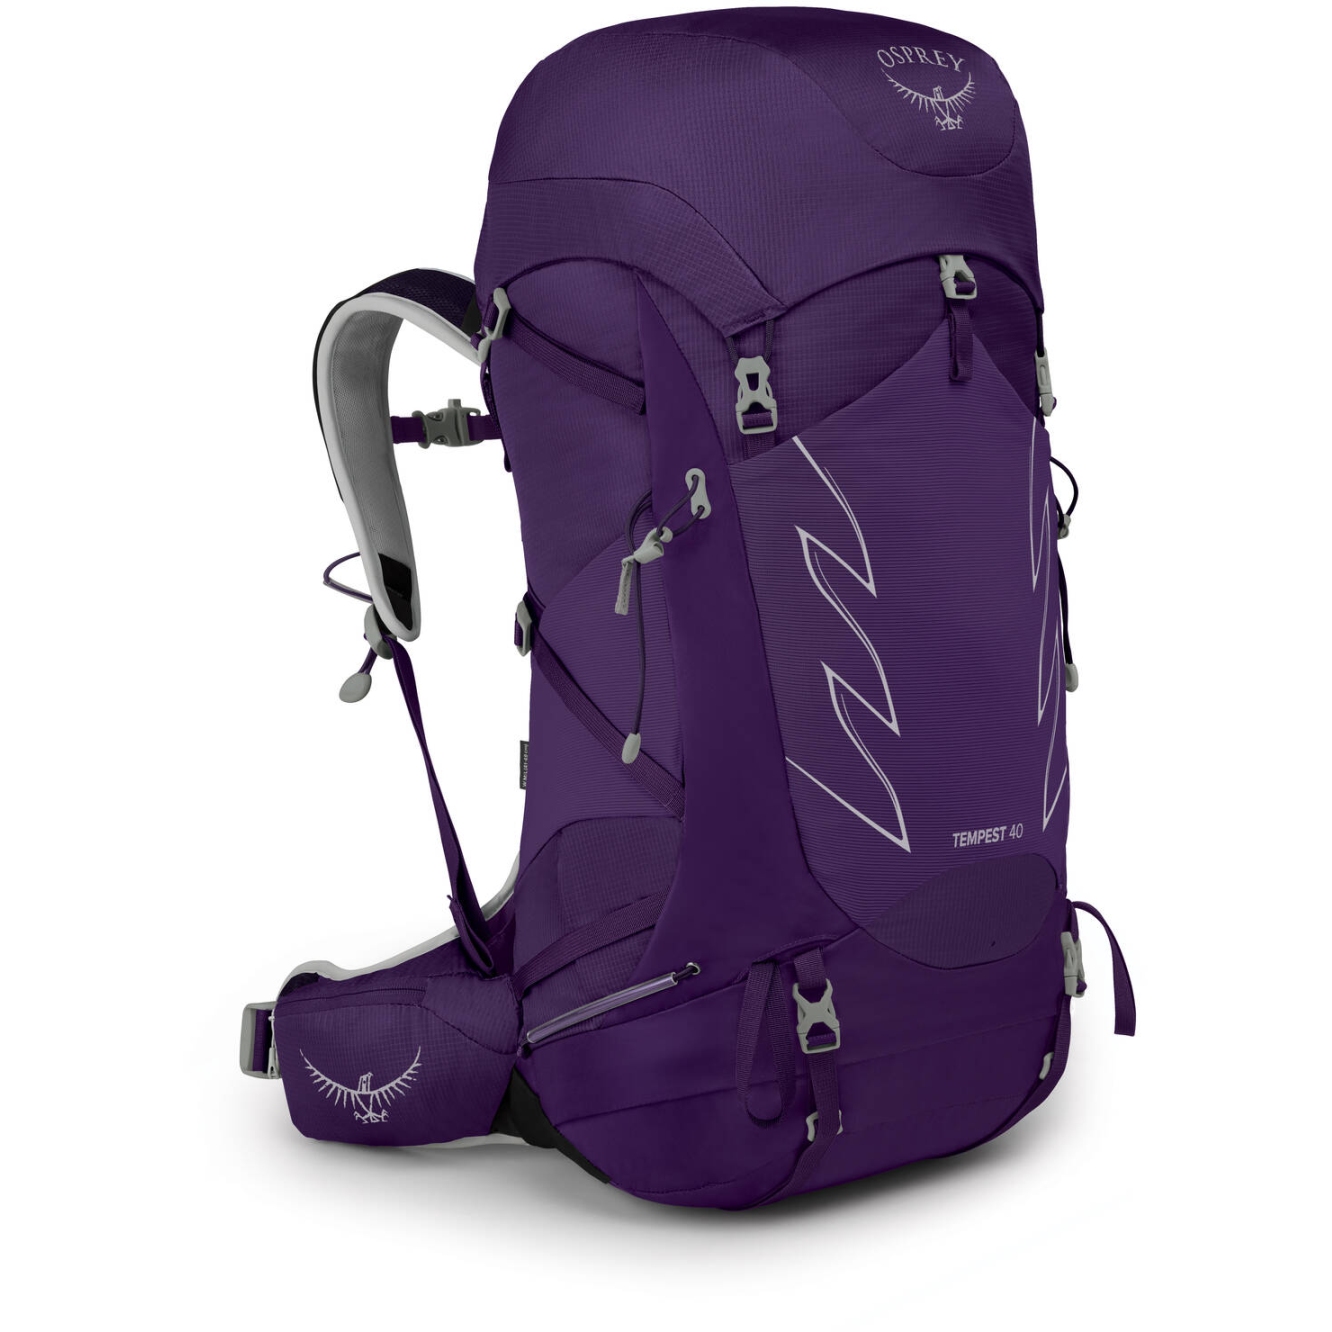 Produktbild von Osprey Tempest 40 Damen Rucksack - Violac Purple